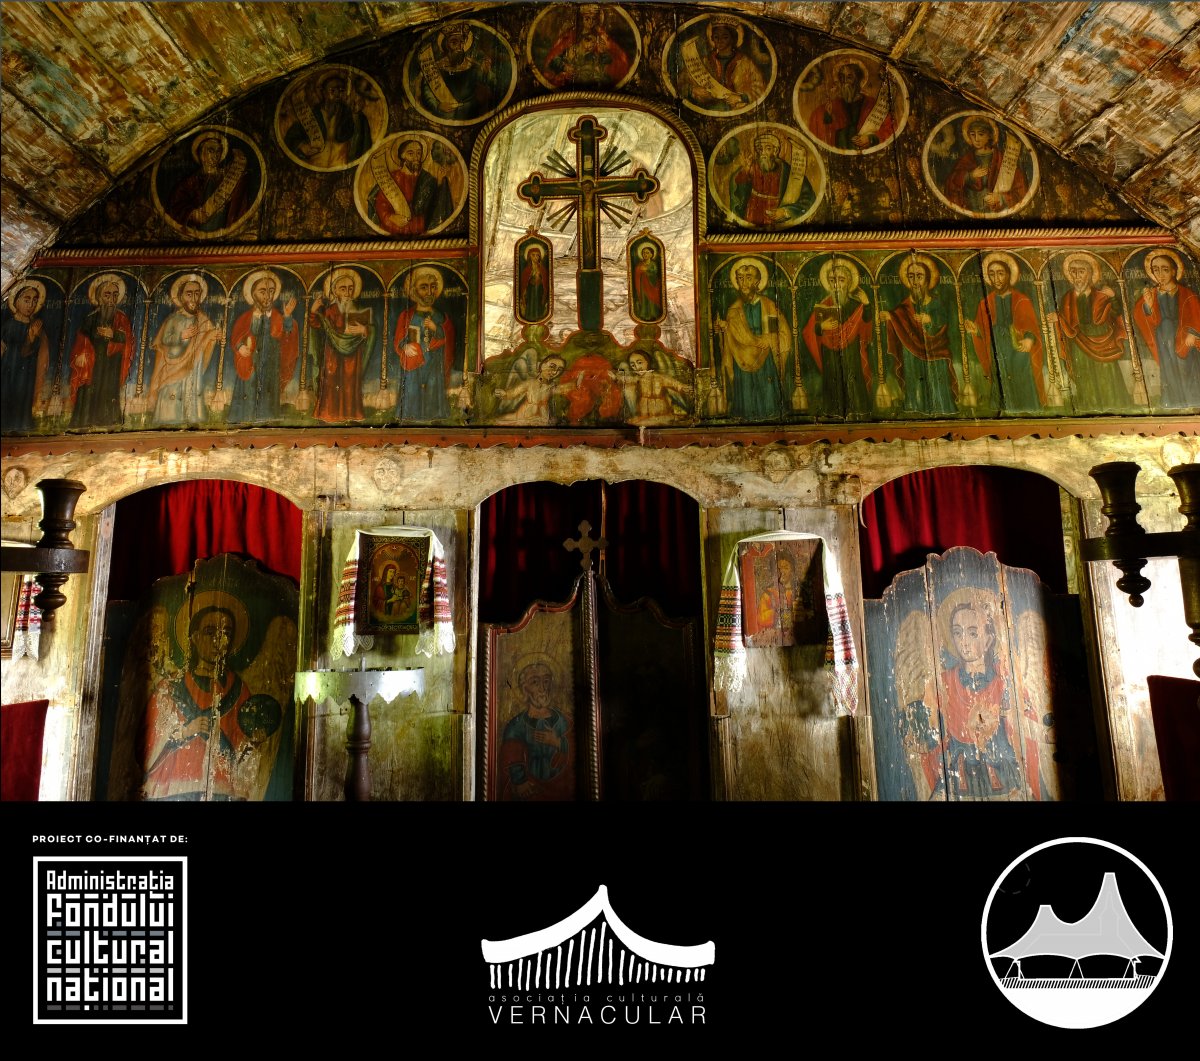 Biserici Înlemnite. Inventarierea bisericilor istorice de lemn din România - proiect-pilot: bisericile de lemn din jud. Arad